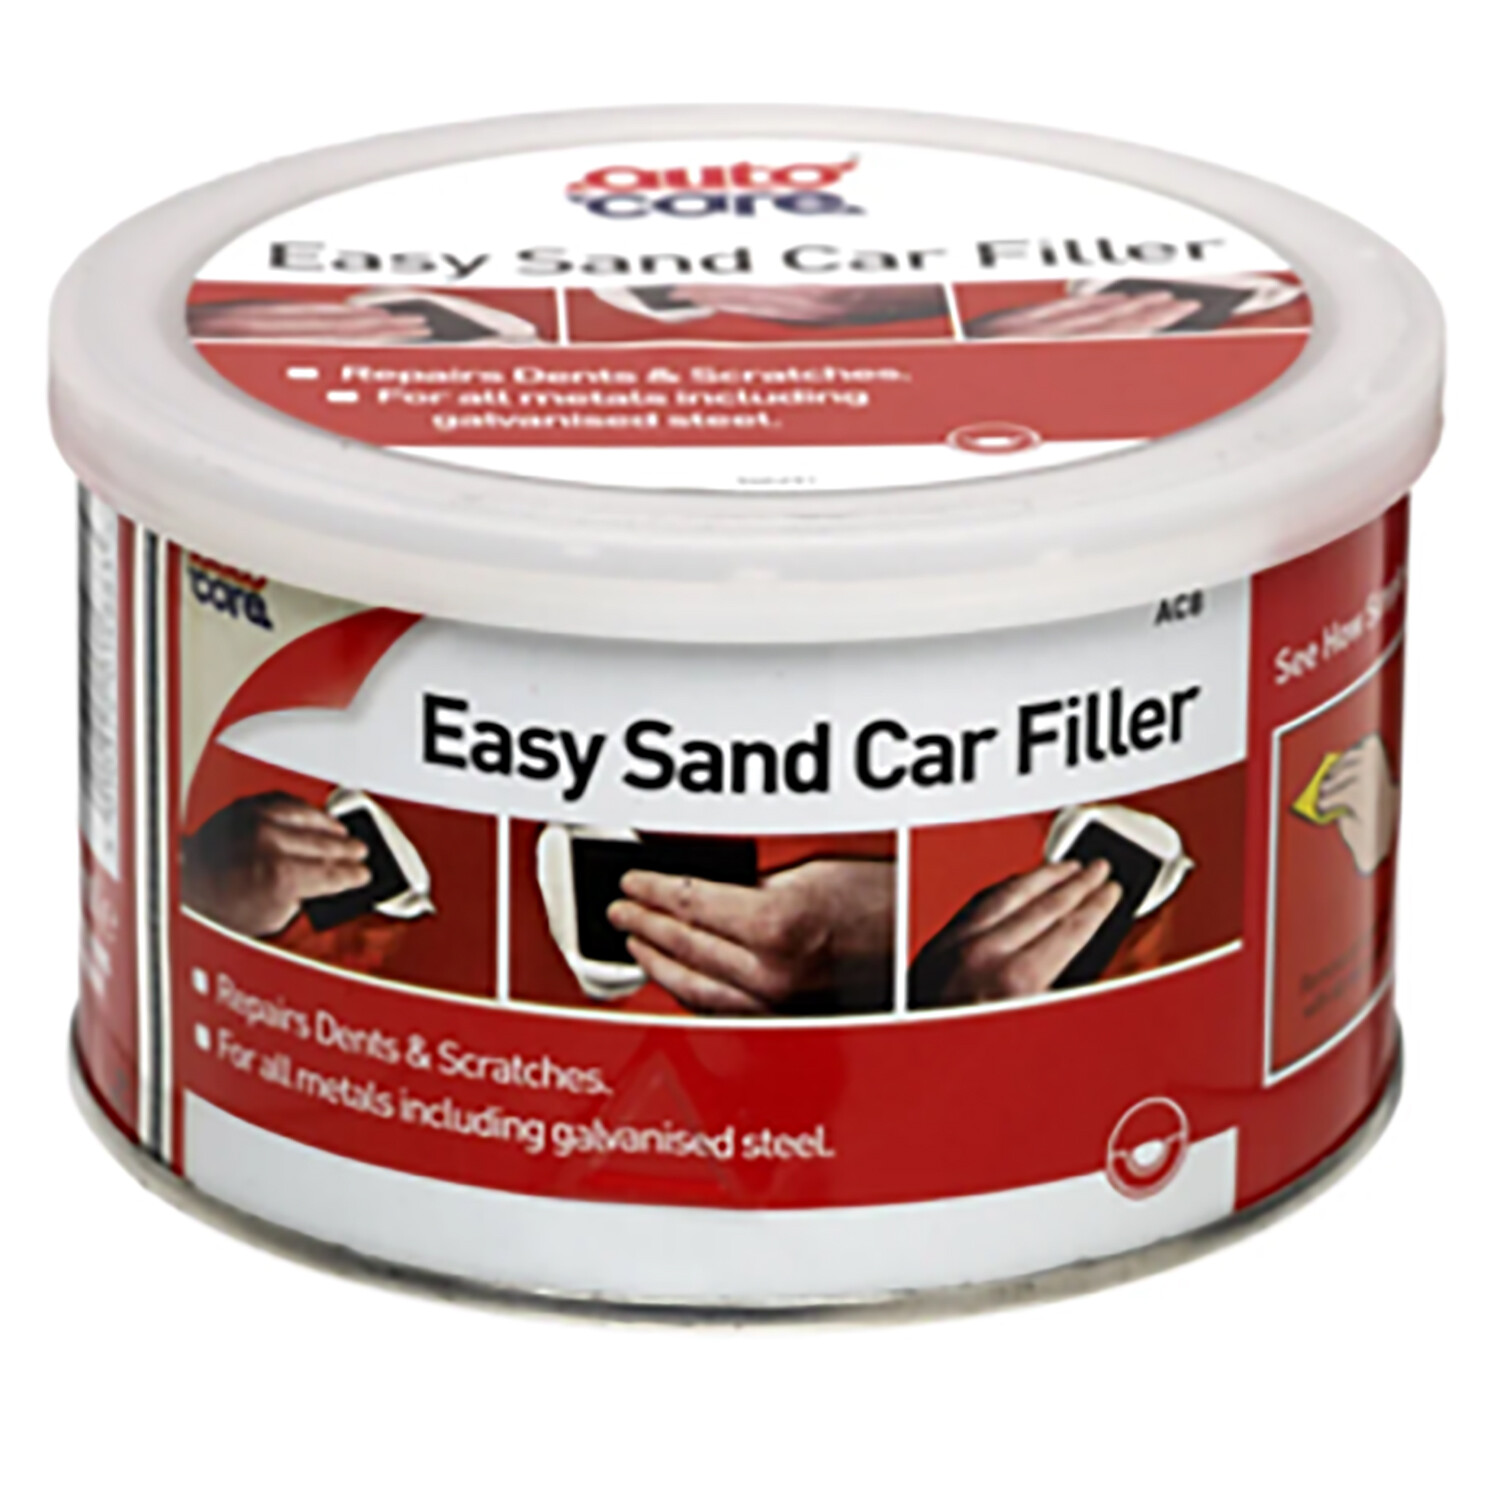 Easy Sand Car Filler Image